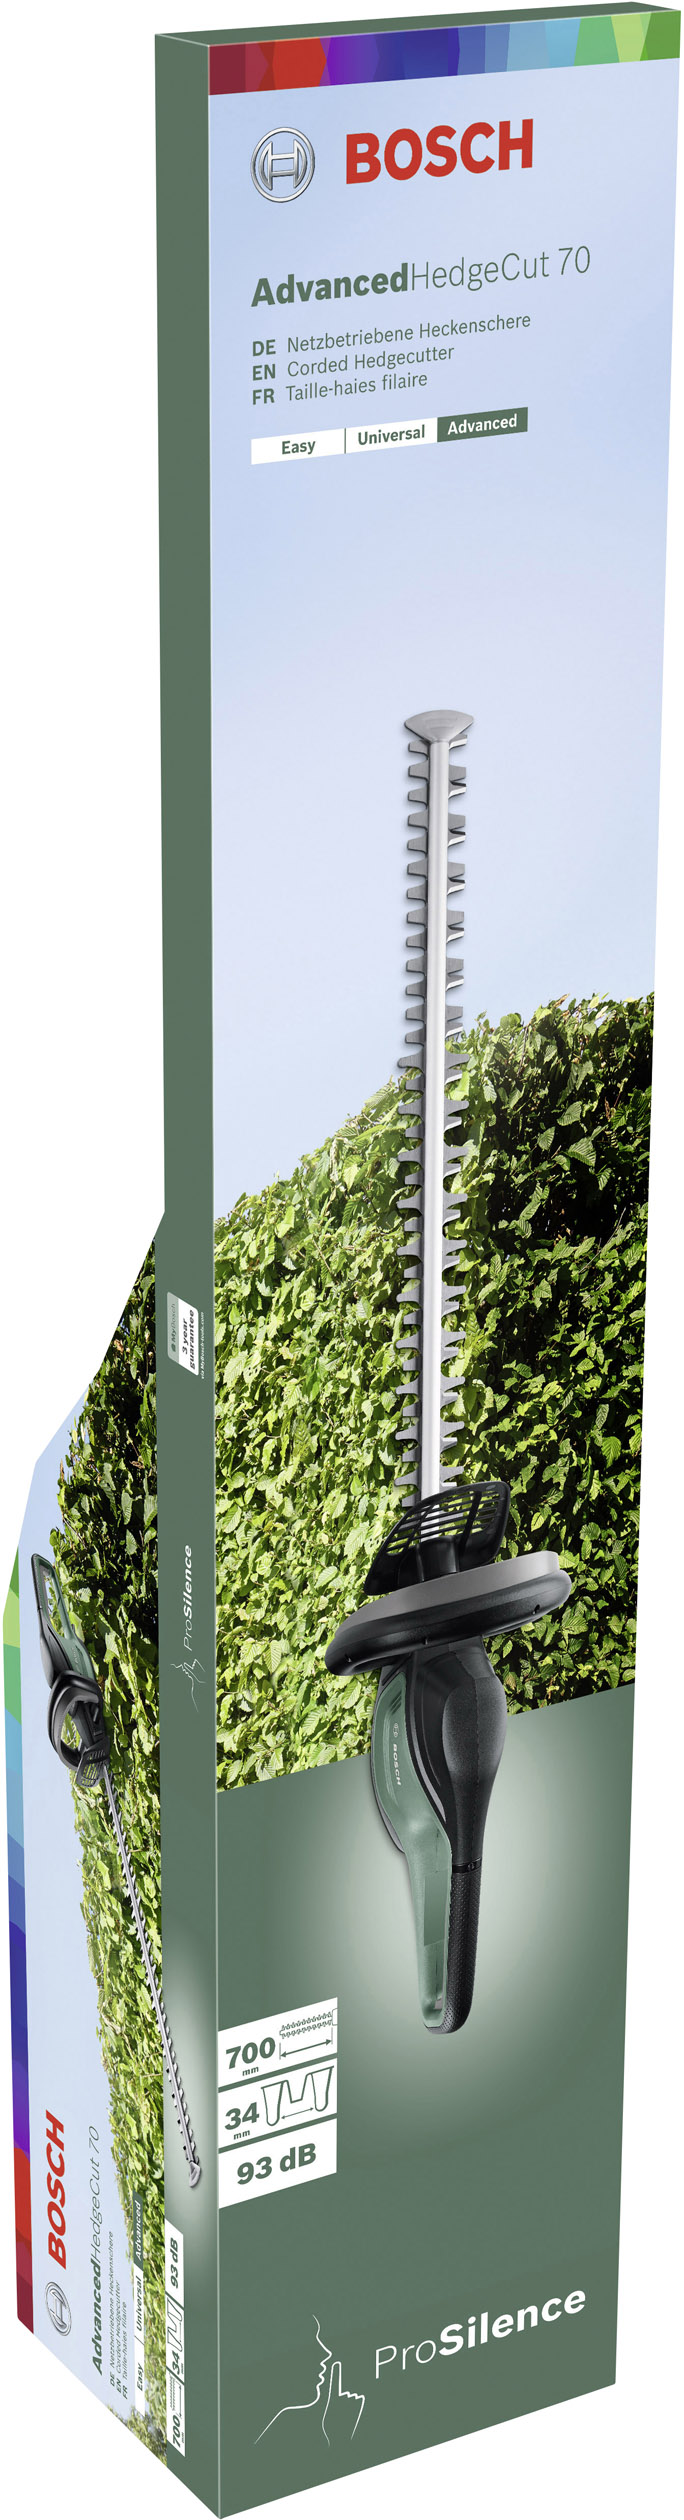 Bosch Home and Garden AdvancedHedgecut 70 Elektro Heckenschere mit Schutzbügel 500 W 700 mm